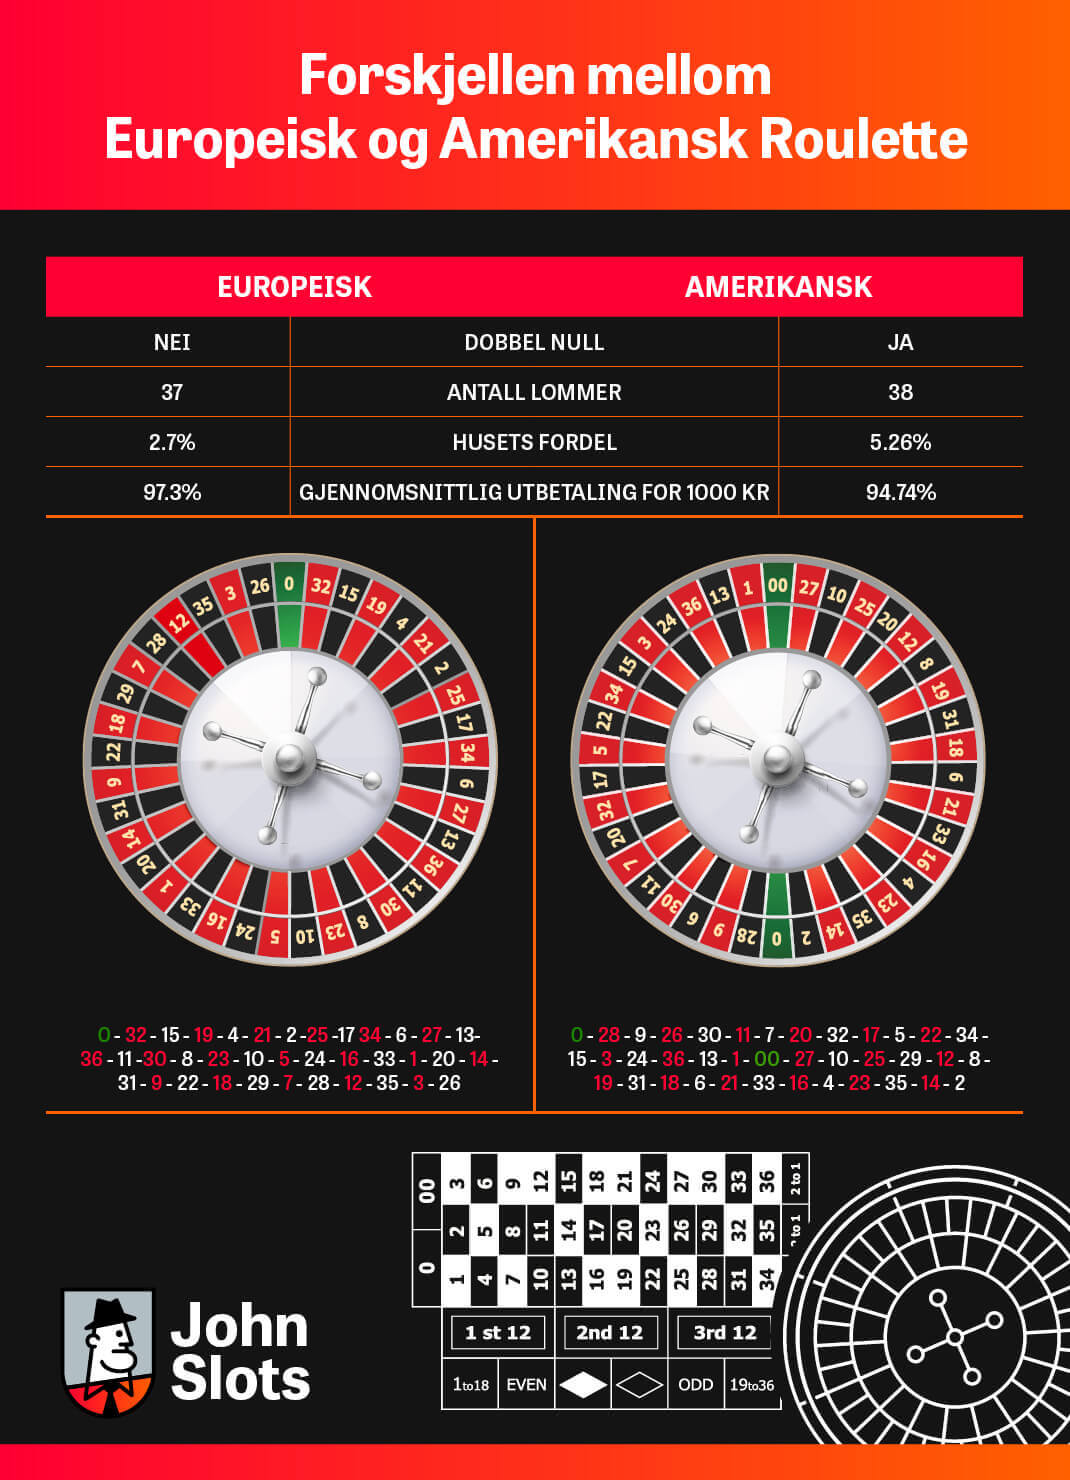 Forskjellen mellom Europeisk roulette og amerikansk roulette